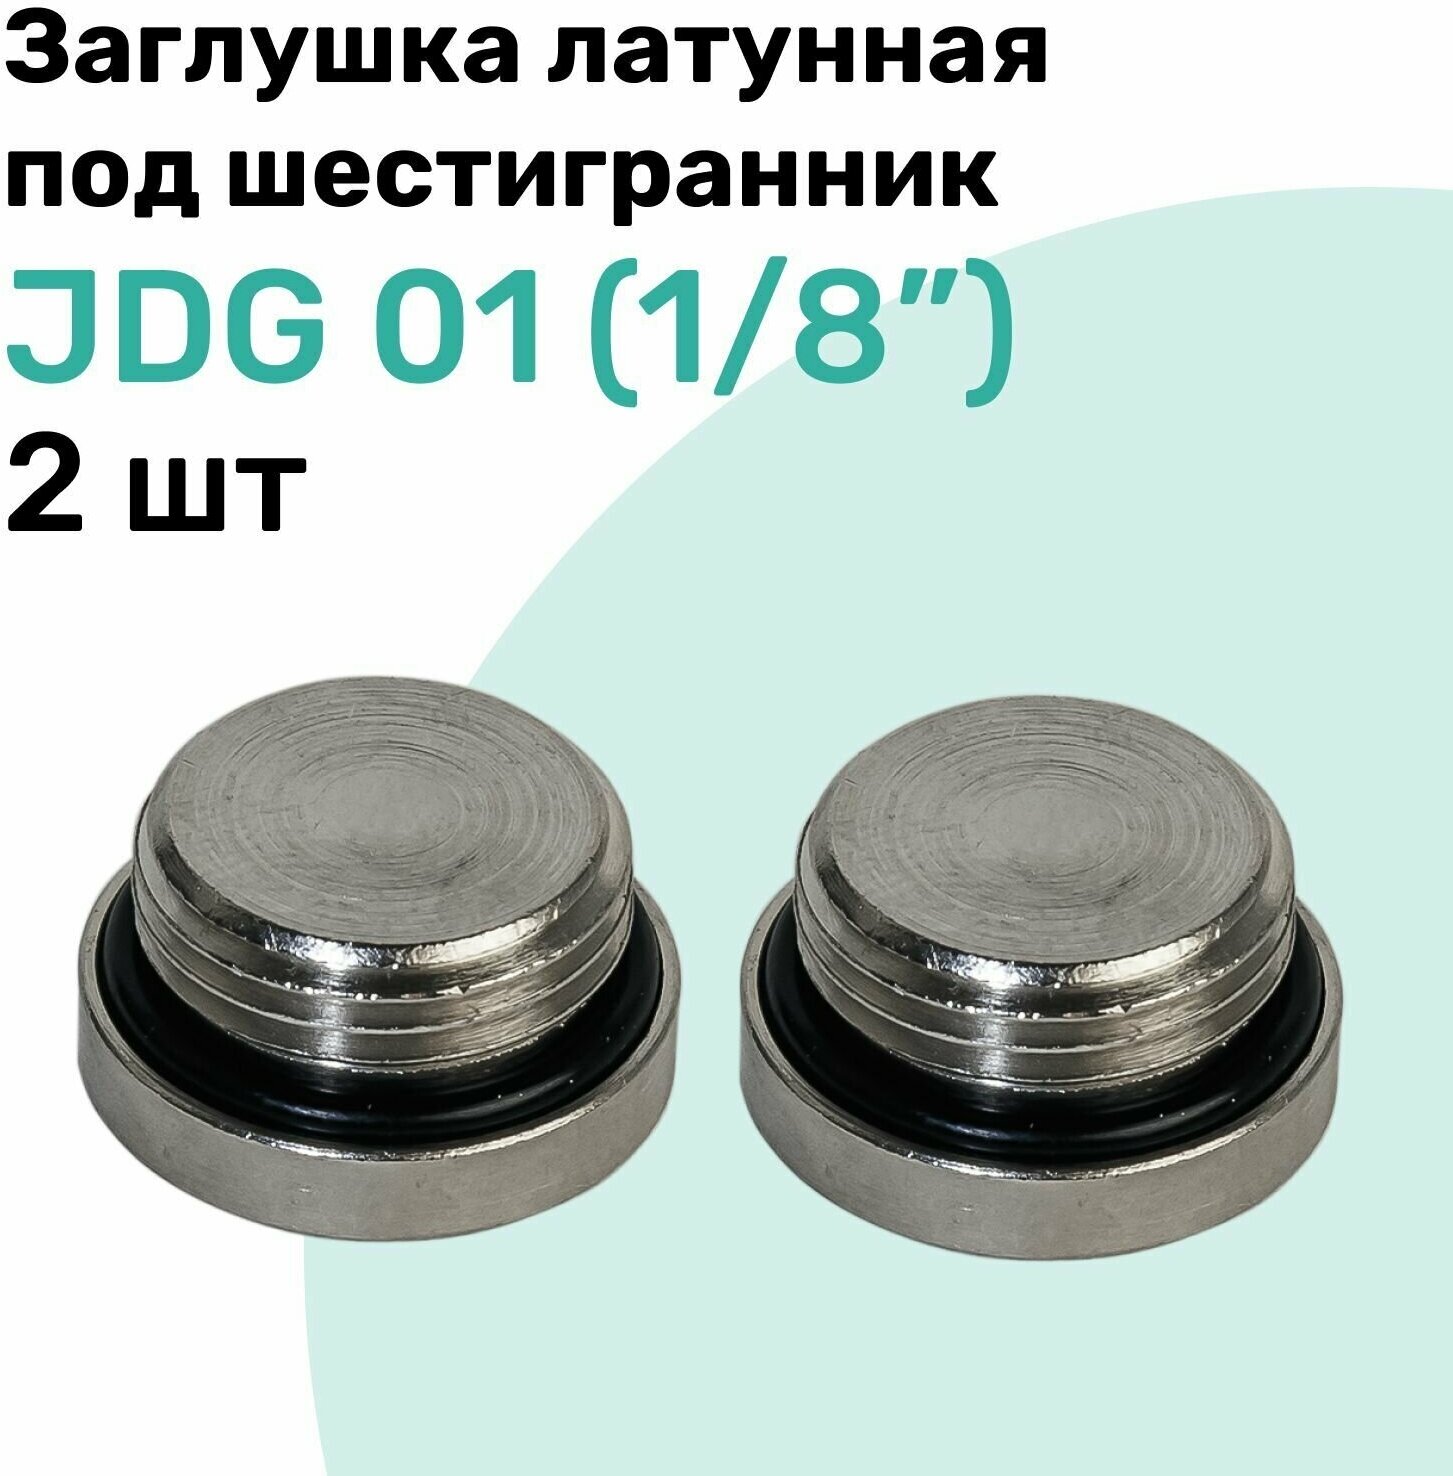 Заглушка латунная под шестигранник JDG 01 (R1/8